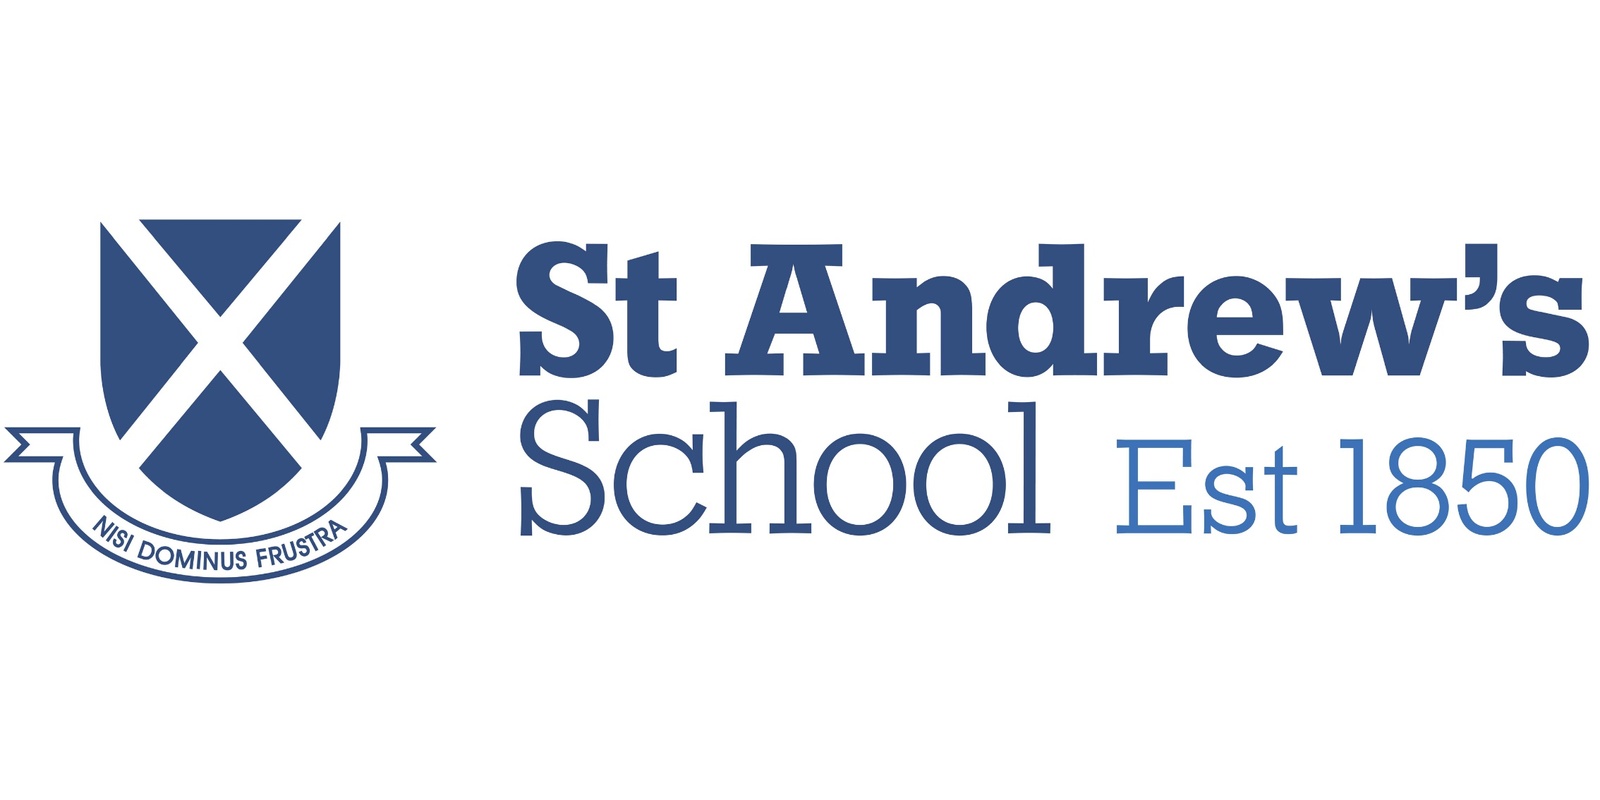 St Andrew's School's banner